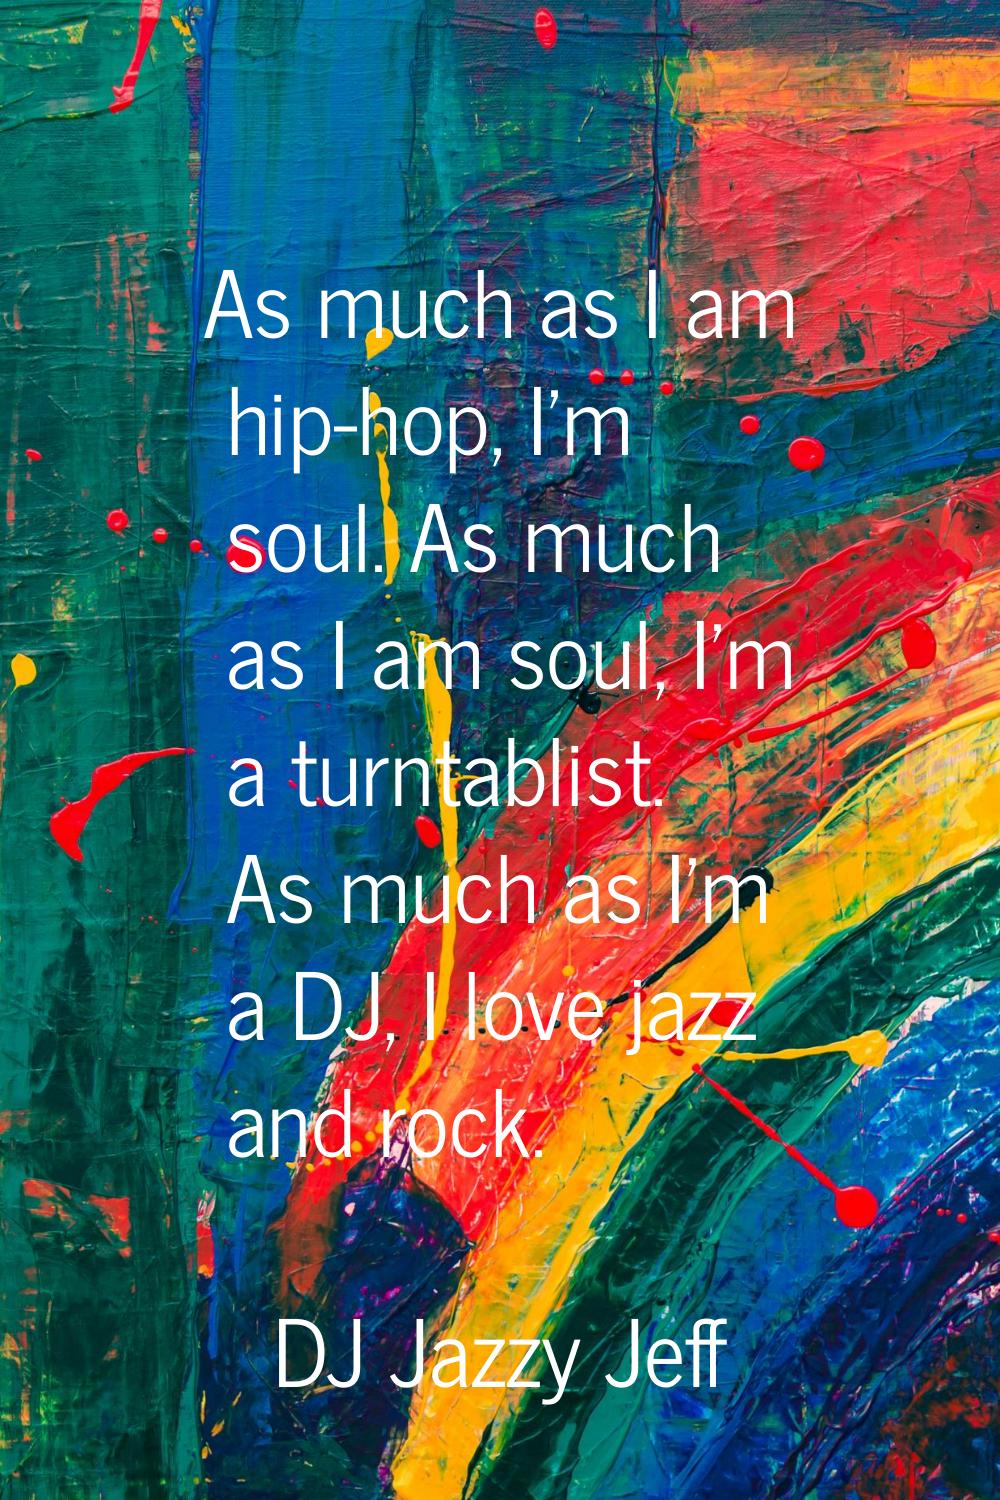 As much as I am hip-hop, I'm soul. As much as I am soul, I'm a turntablist. As much as I'm a DJ, I 